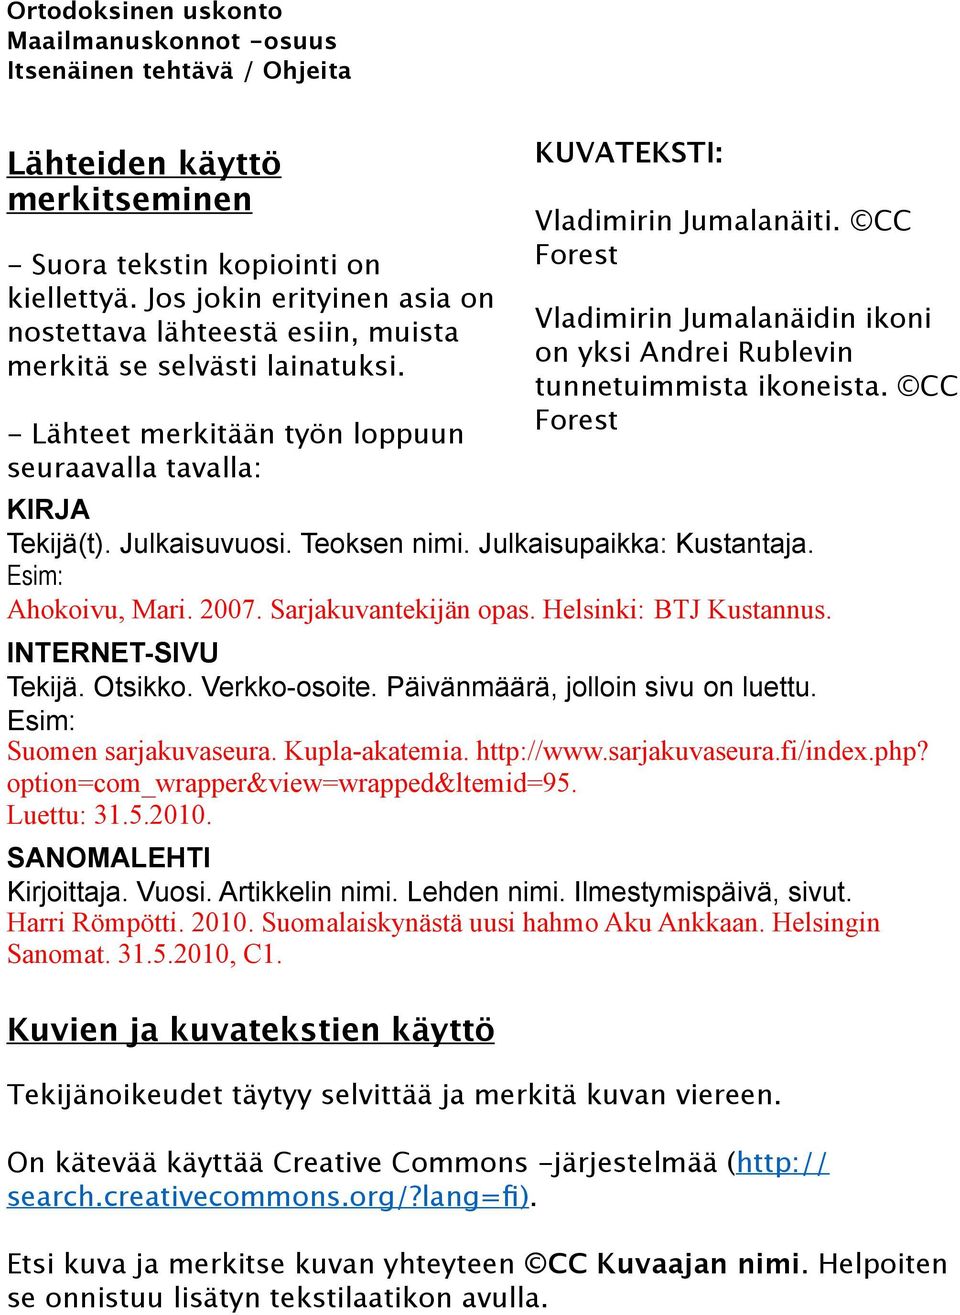 Julkaisupaikka: Kustantaja. Esim: Ahokoivu, Mari. 2007. Sarjakuvantekijän opas. Helsinki: BTJ Kustannus. INTERNET-SIVU Tekijä. Otsikko. Verkko-osoite. Päivänmäärä, jolloin sivu on luettu.